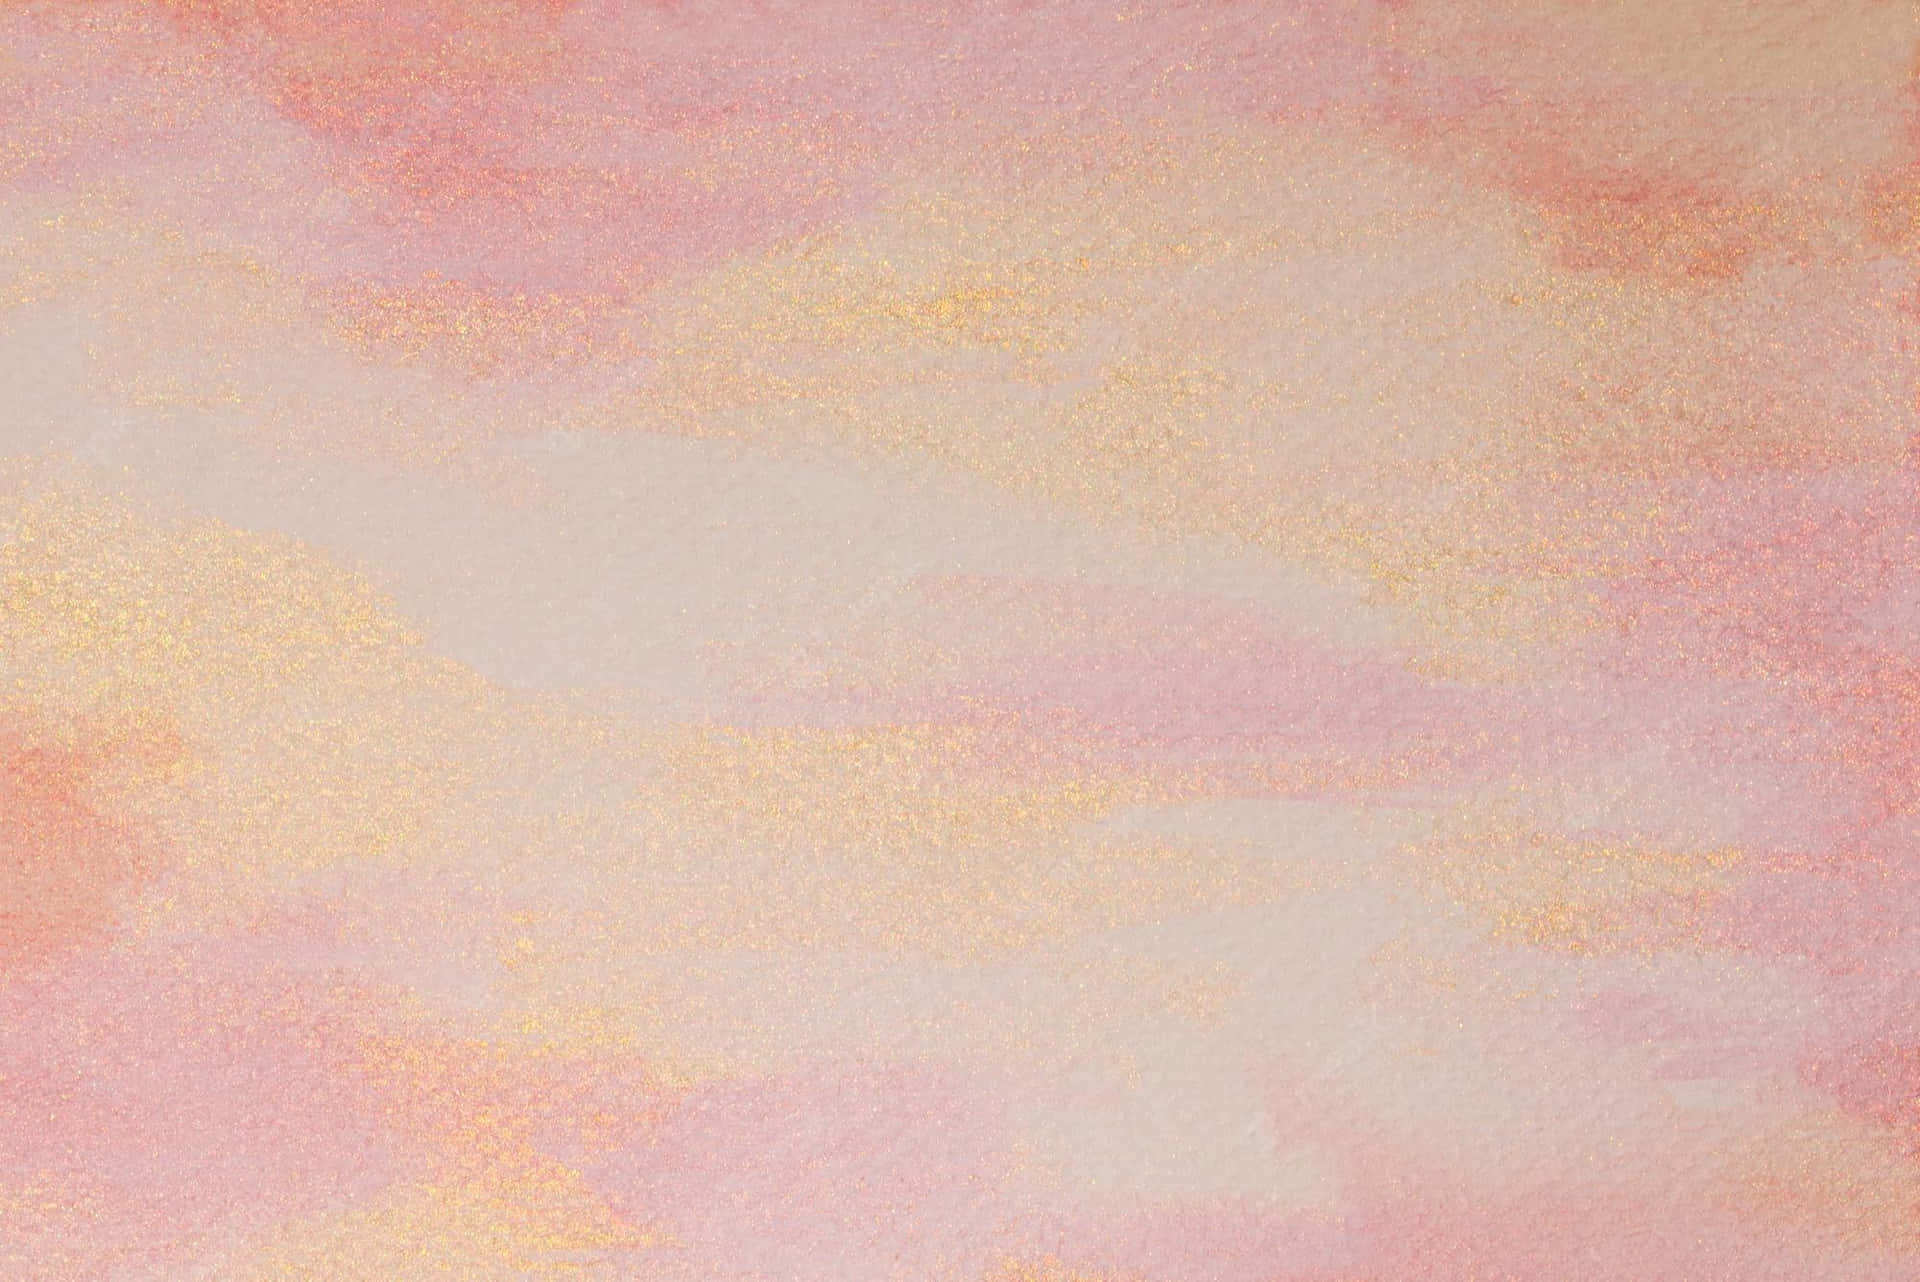 Einaquarellbild Eines Rosafarbenen Und Gelben Himmels. Wallpaper